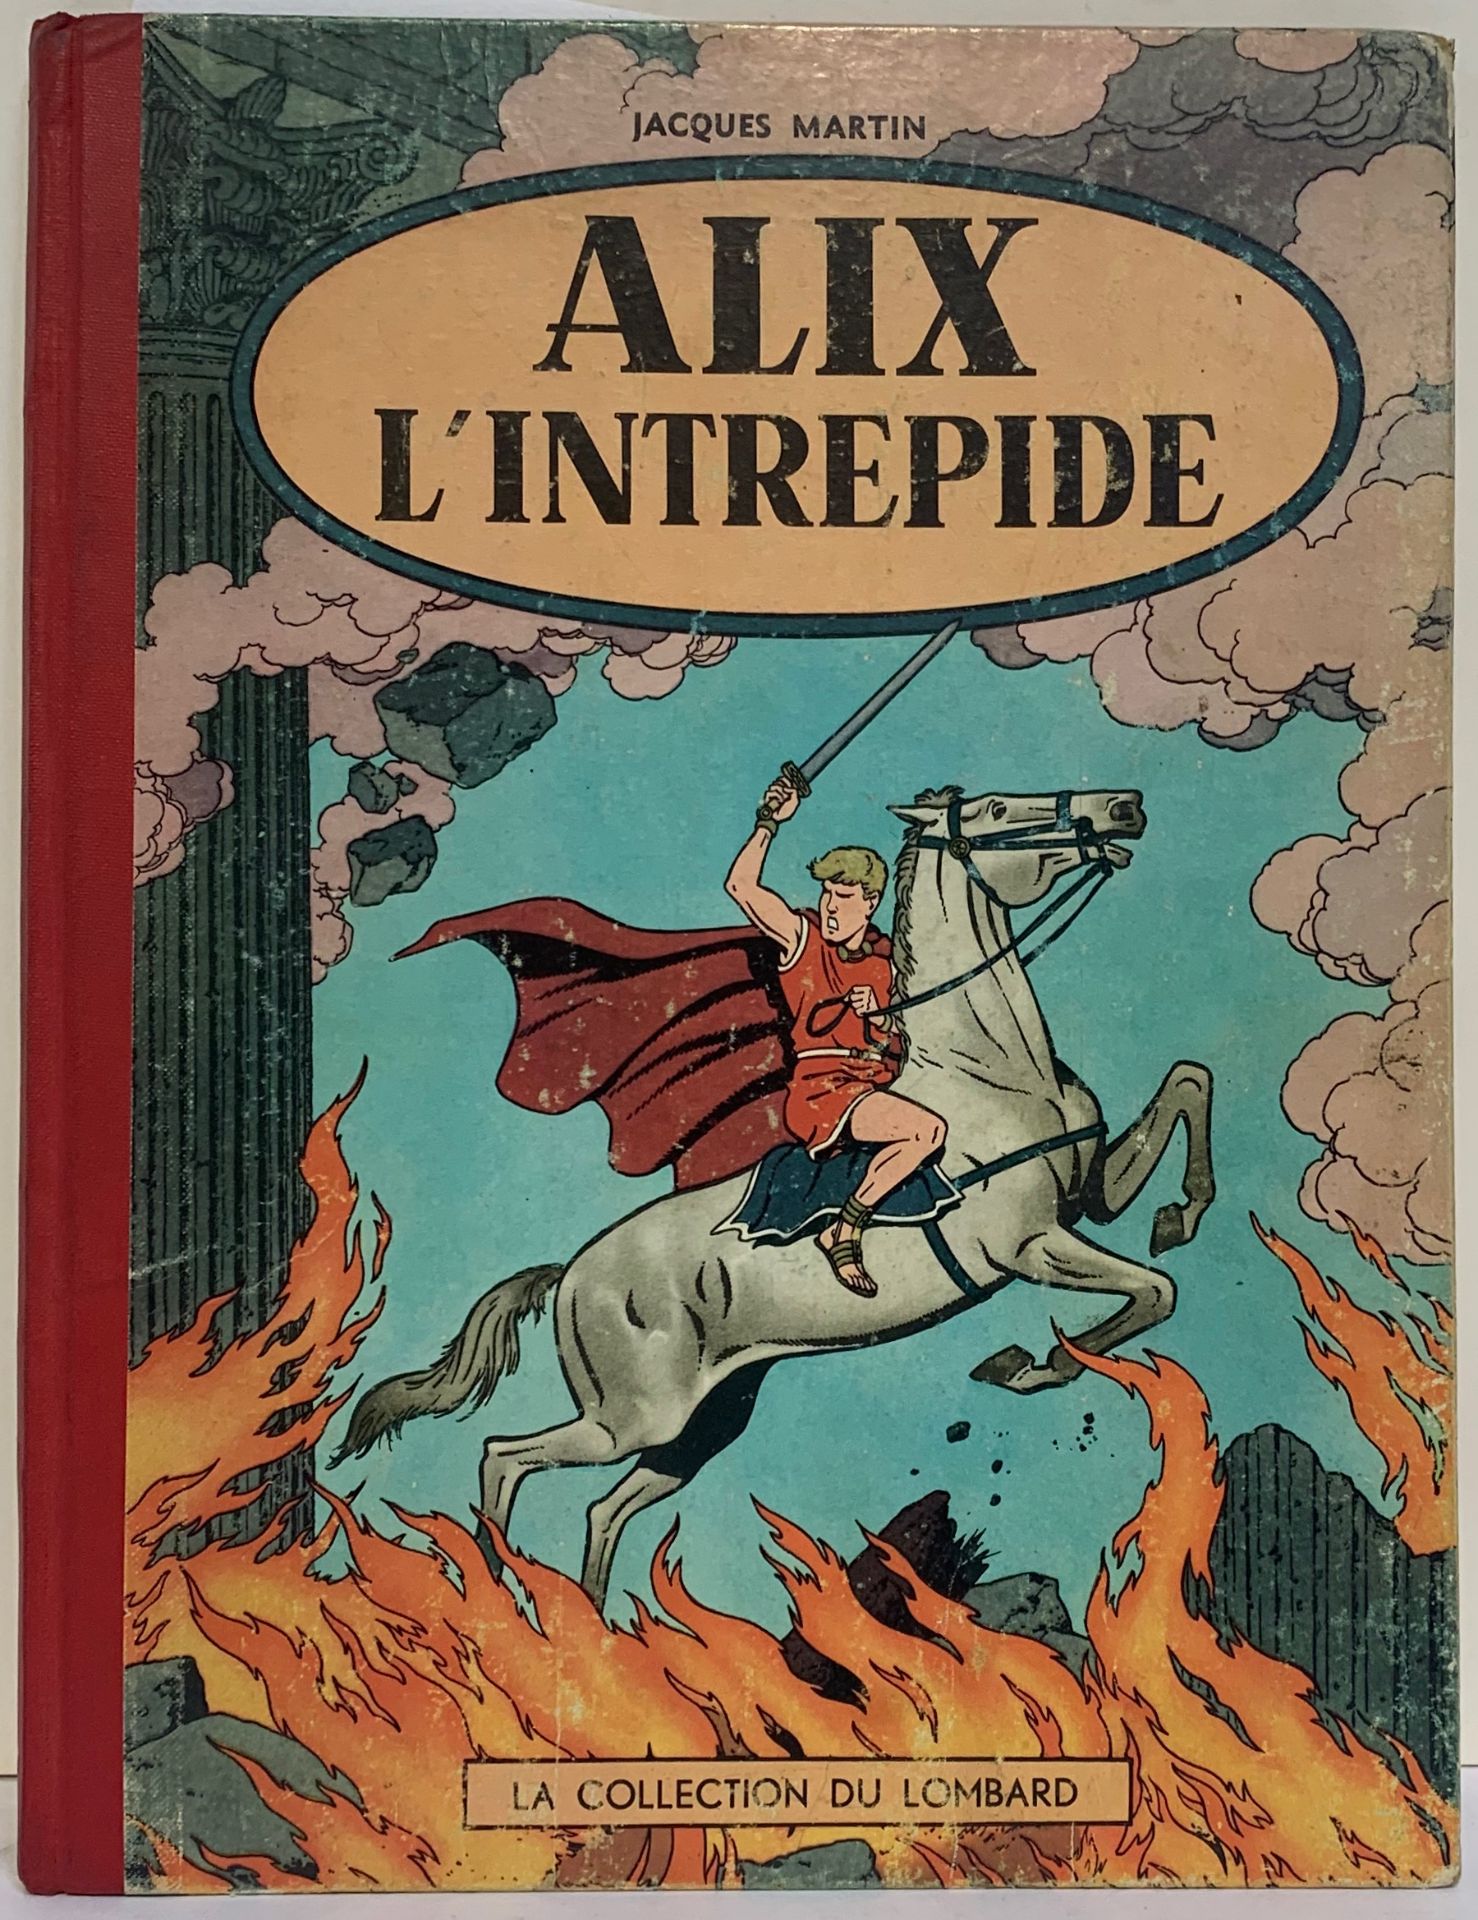 ALIX JACQUES MARTIN Alix der Unerschrockene, Originalausgabe von 1956 (mit Tim und Struppi-Punkt).